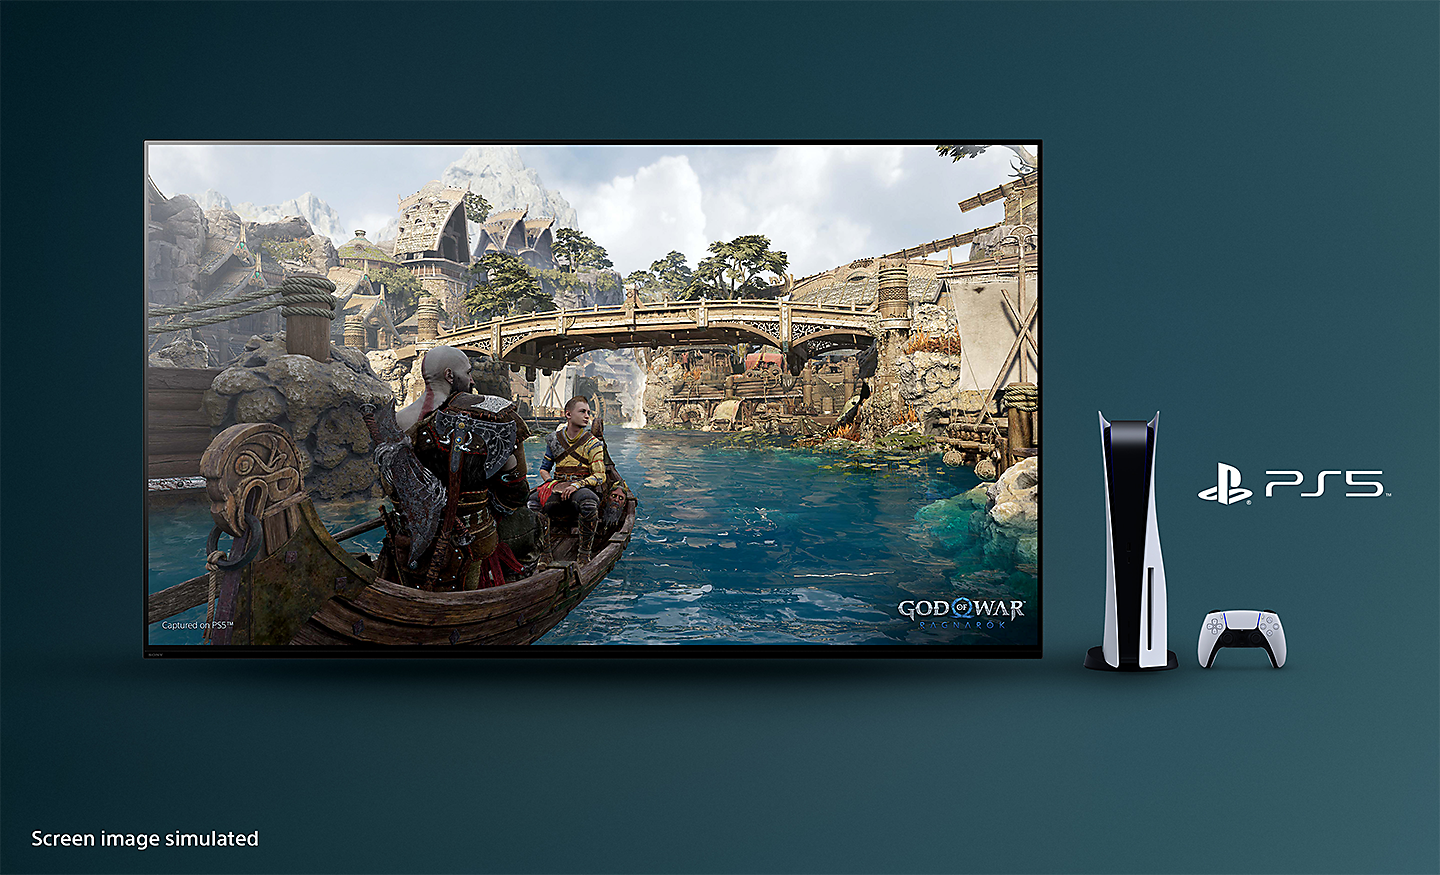 ТБ BRAVIA зі скріншотом God of War: Ragnarok, на якому зображено човен на річці та міст на задньому плані з консоллю PS5™, контролером та логотипом PS5™ праворуч від телевізора